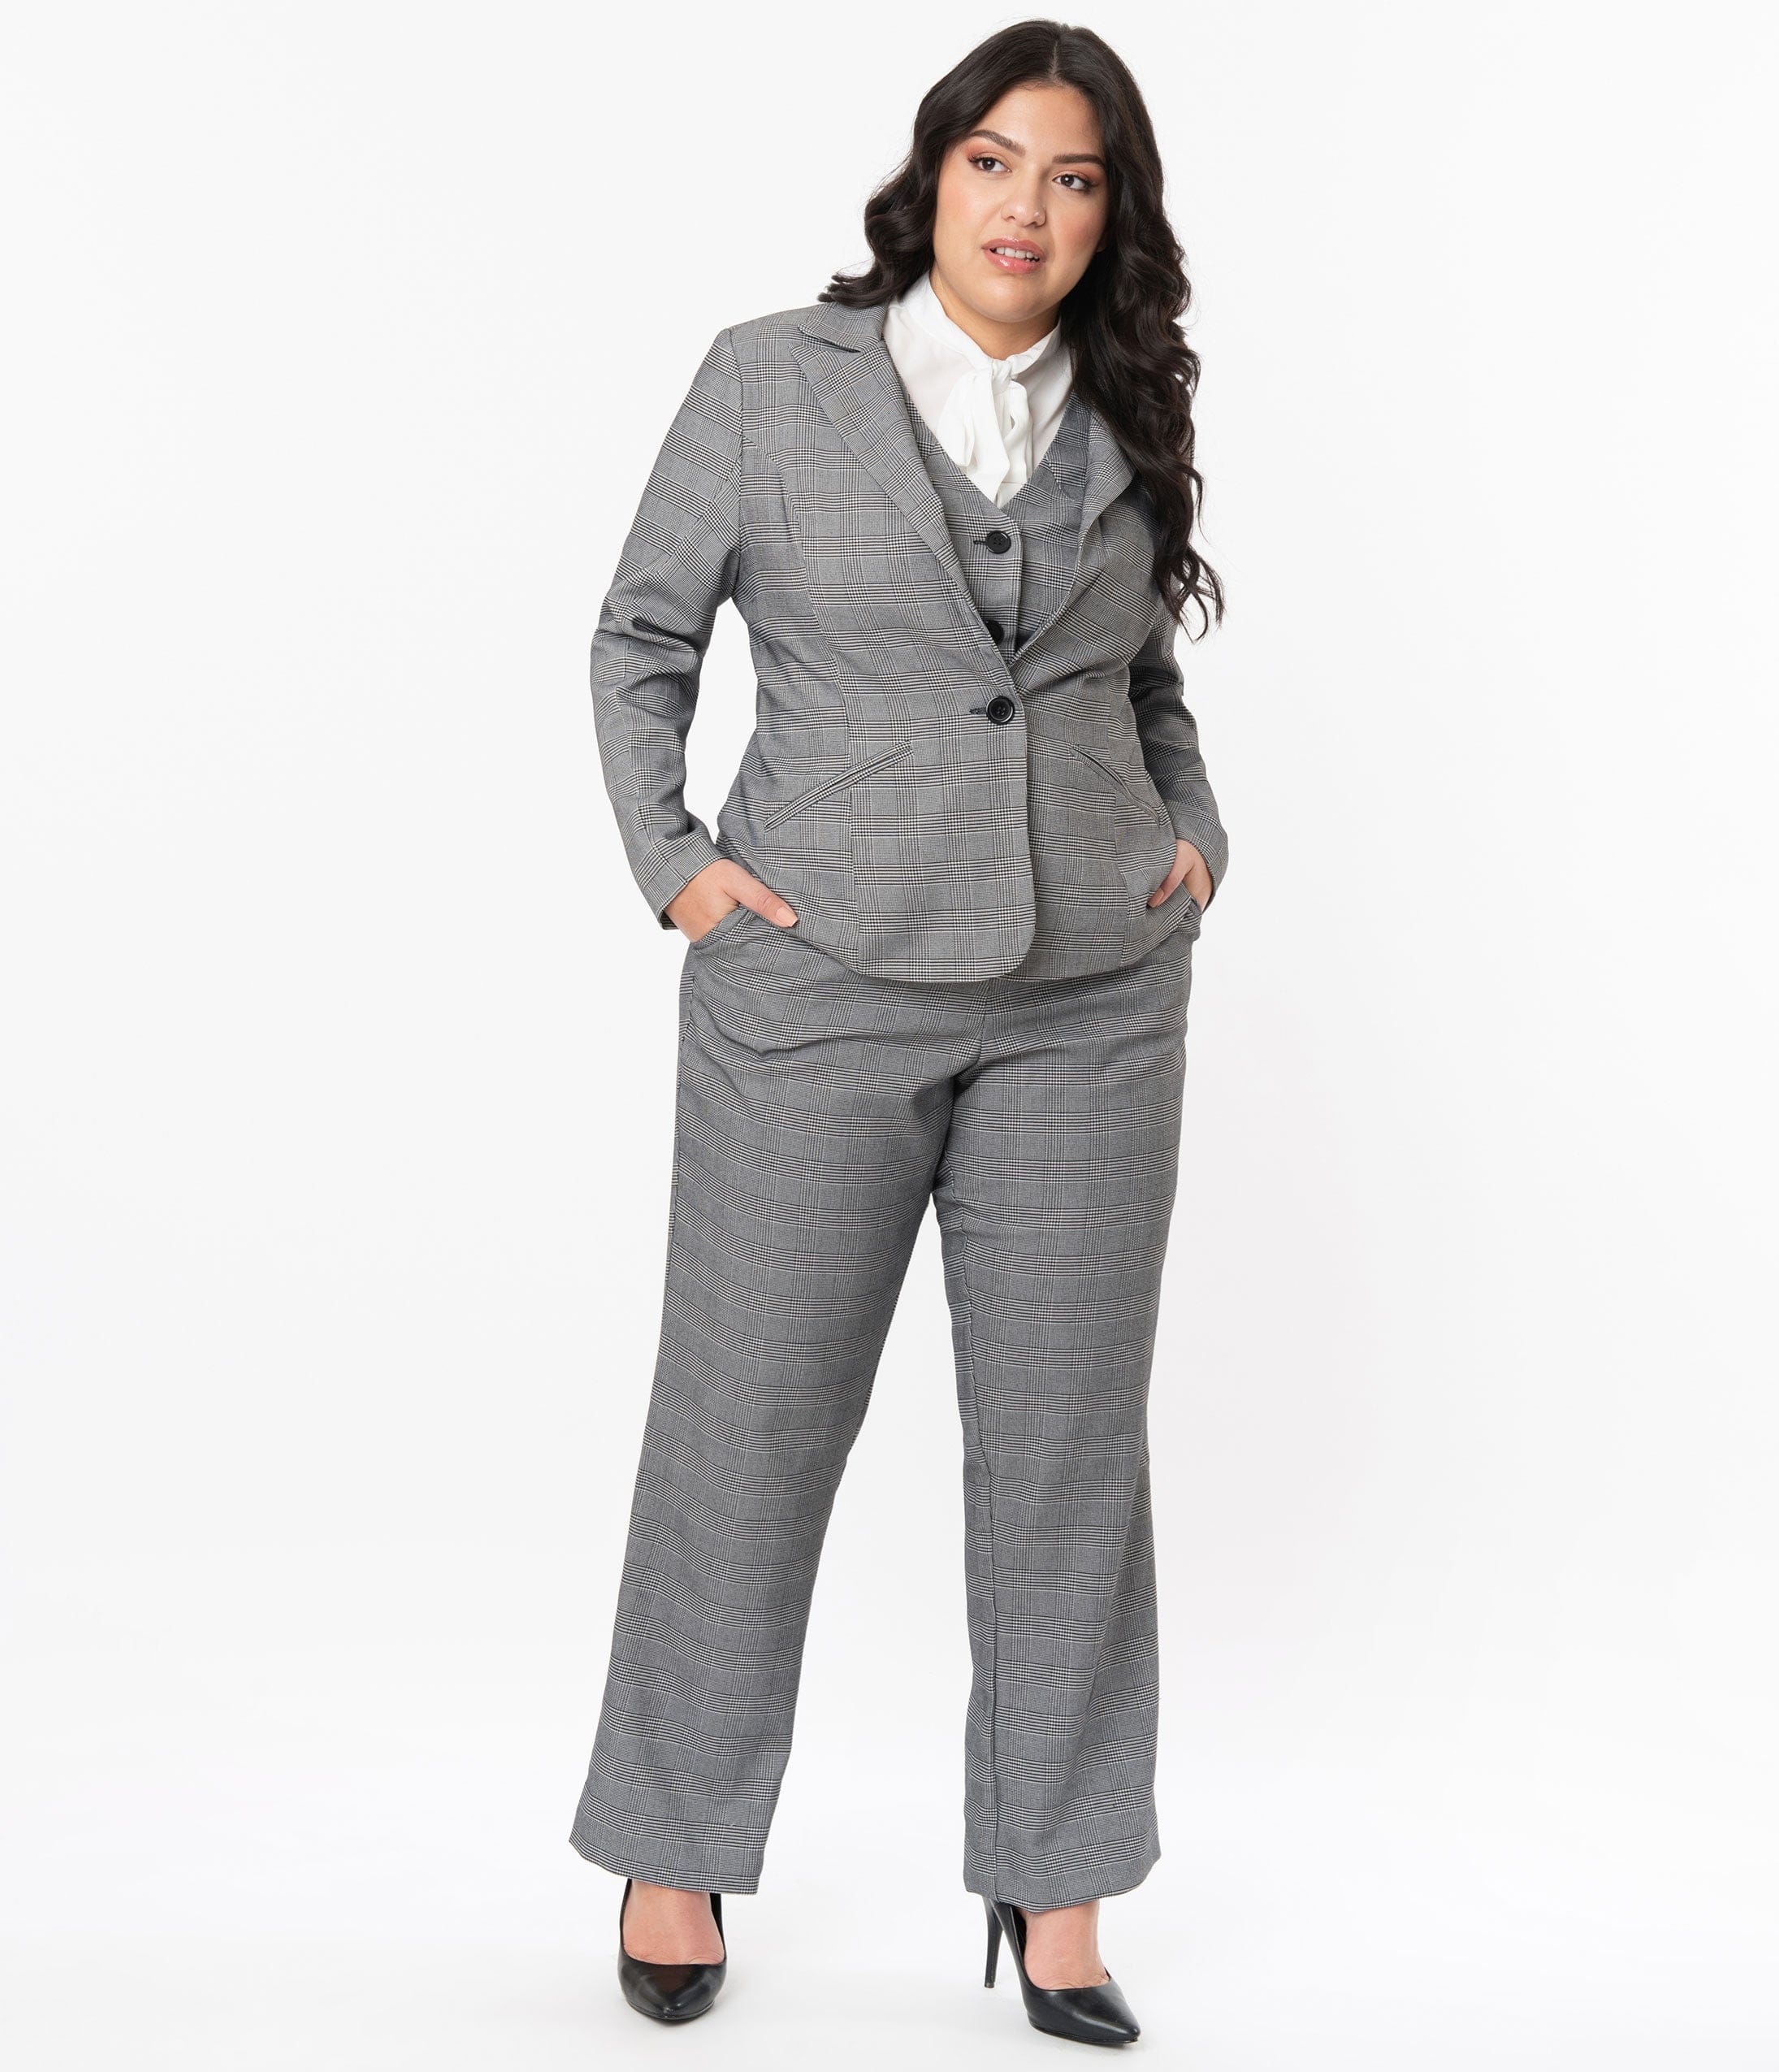 women's tuxedo pant suit plus size